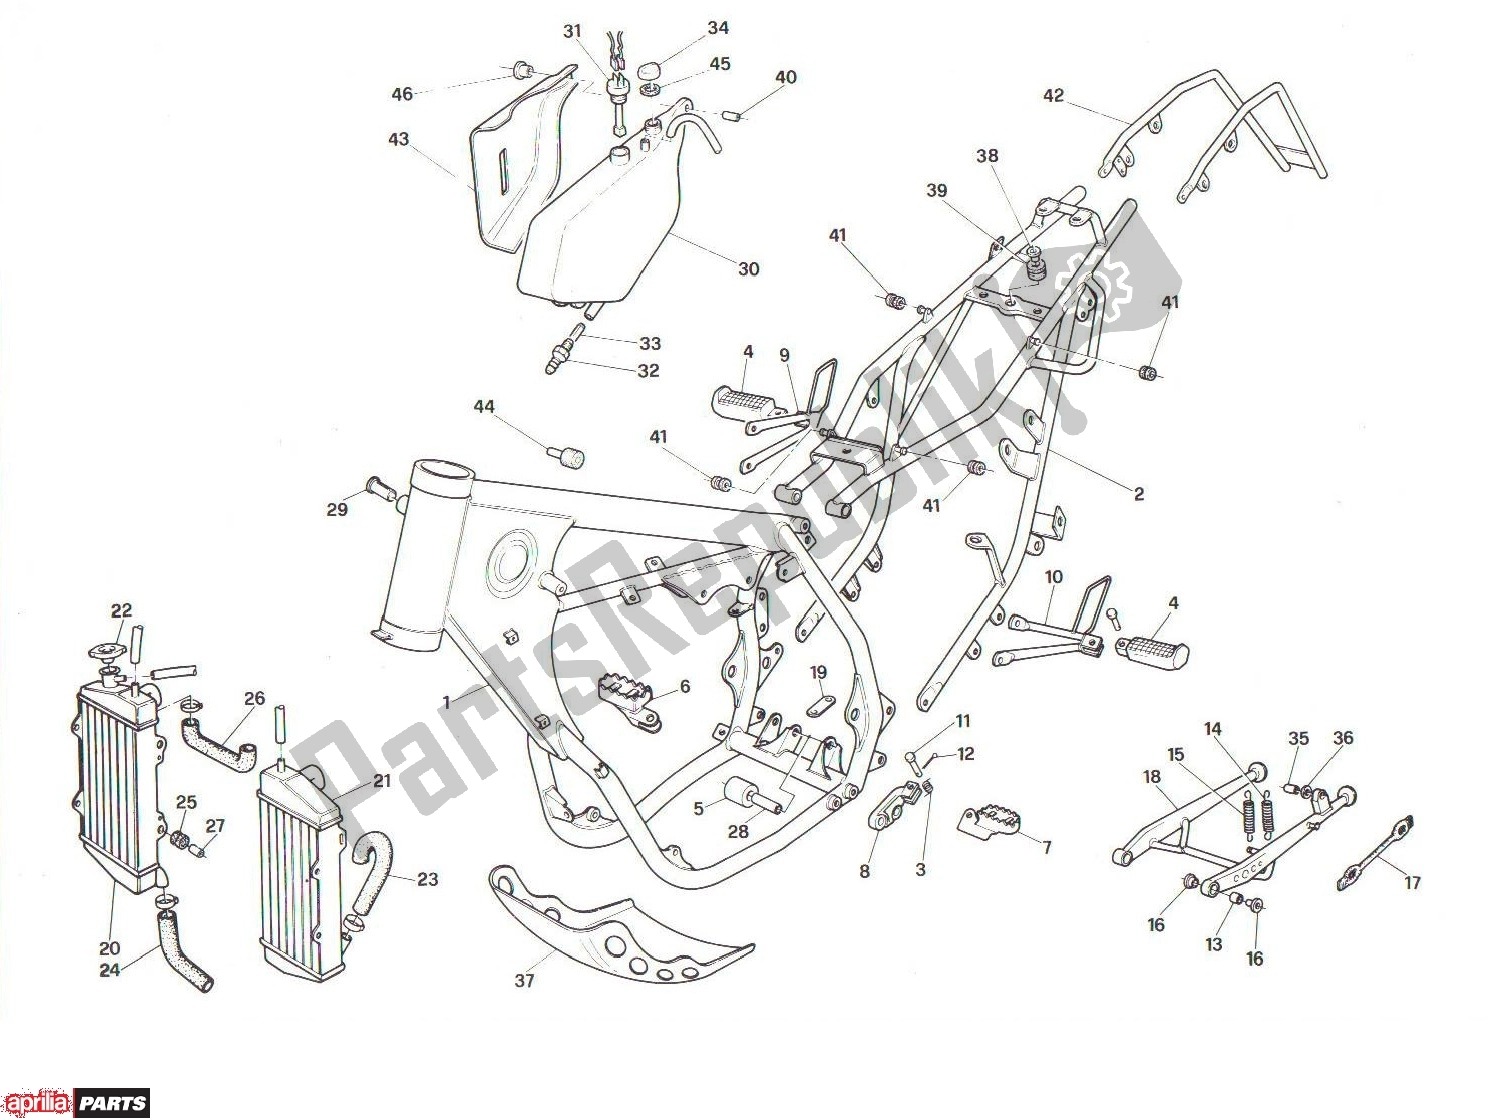 Alle onderdelen voor de Frame van de Aprilia RX 104 125 1991